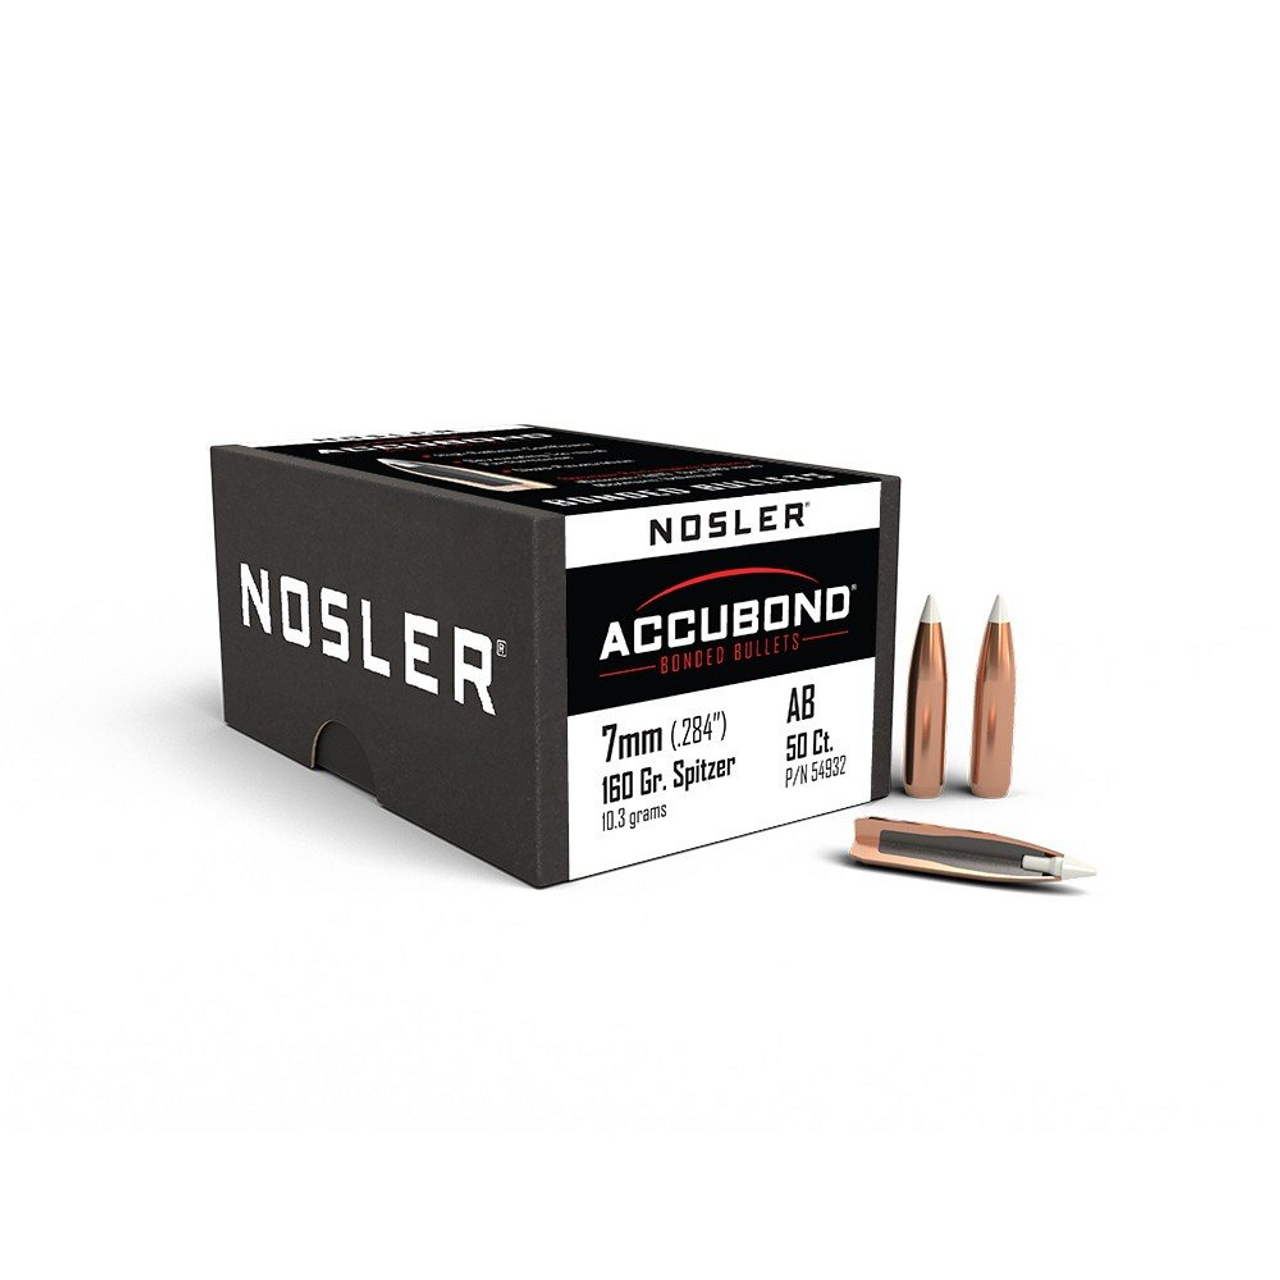 Nosler Accubond 7mm (.284") 160 Gr Spitzer, 50 Ct